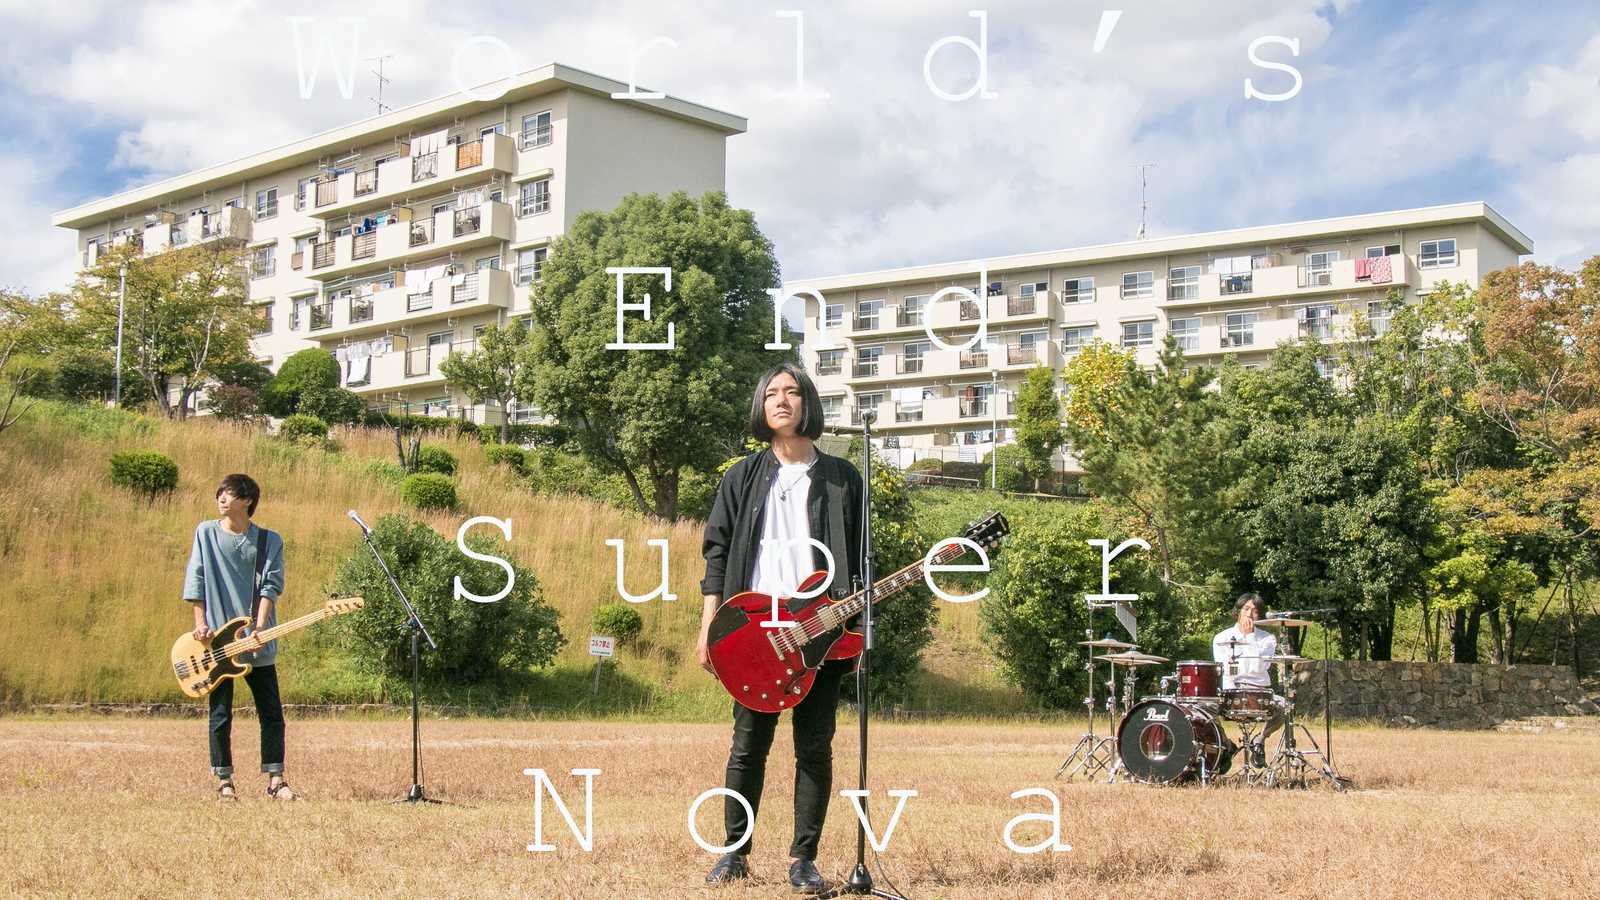 Novo mini-álbum do World's End Super Nova © World's End Super Nova. All rights reserved.